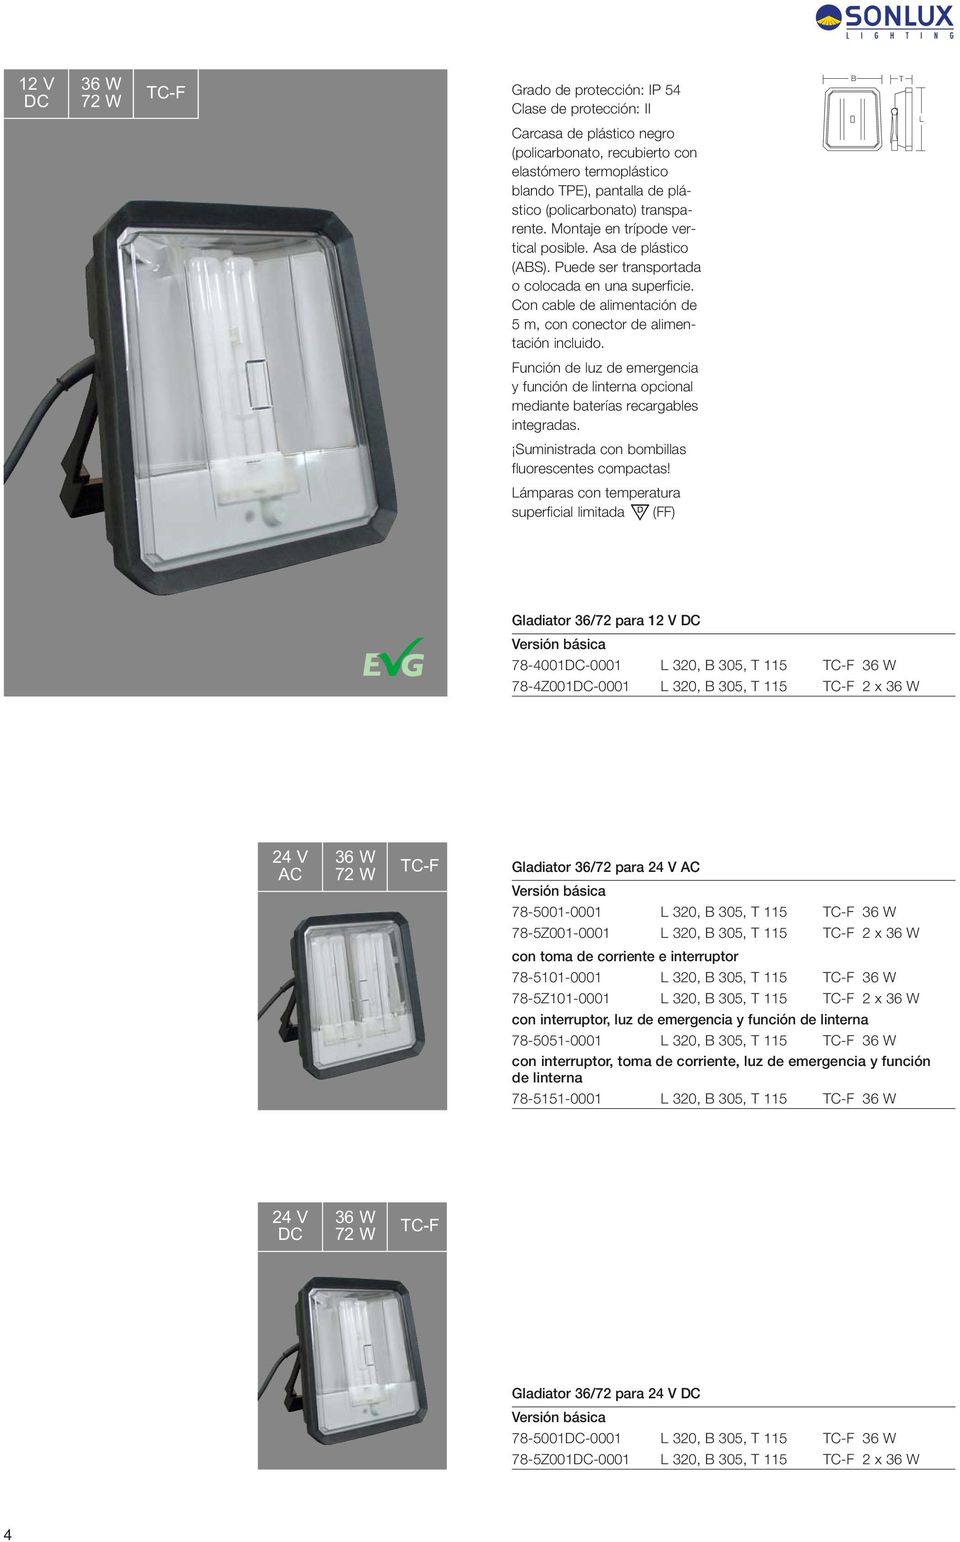 Con cable de alimentación de 5 m, con conector de alimentación incluido. B T L Función de luz de emergencia y función de linterna opcional mediante baterías recargables integradas.